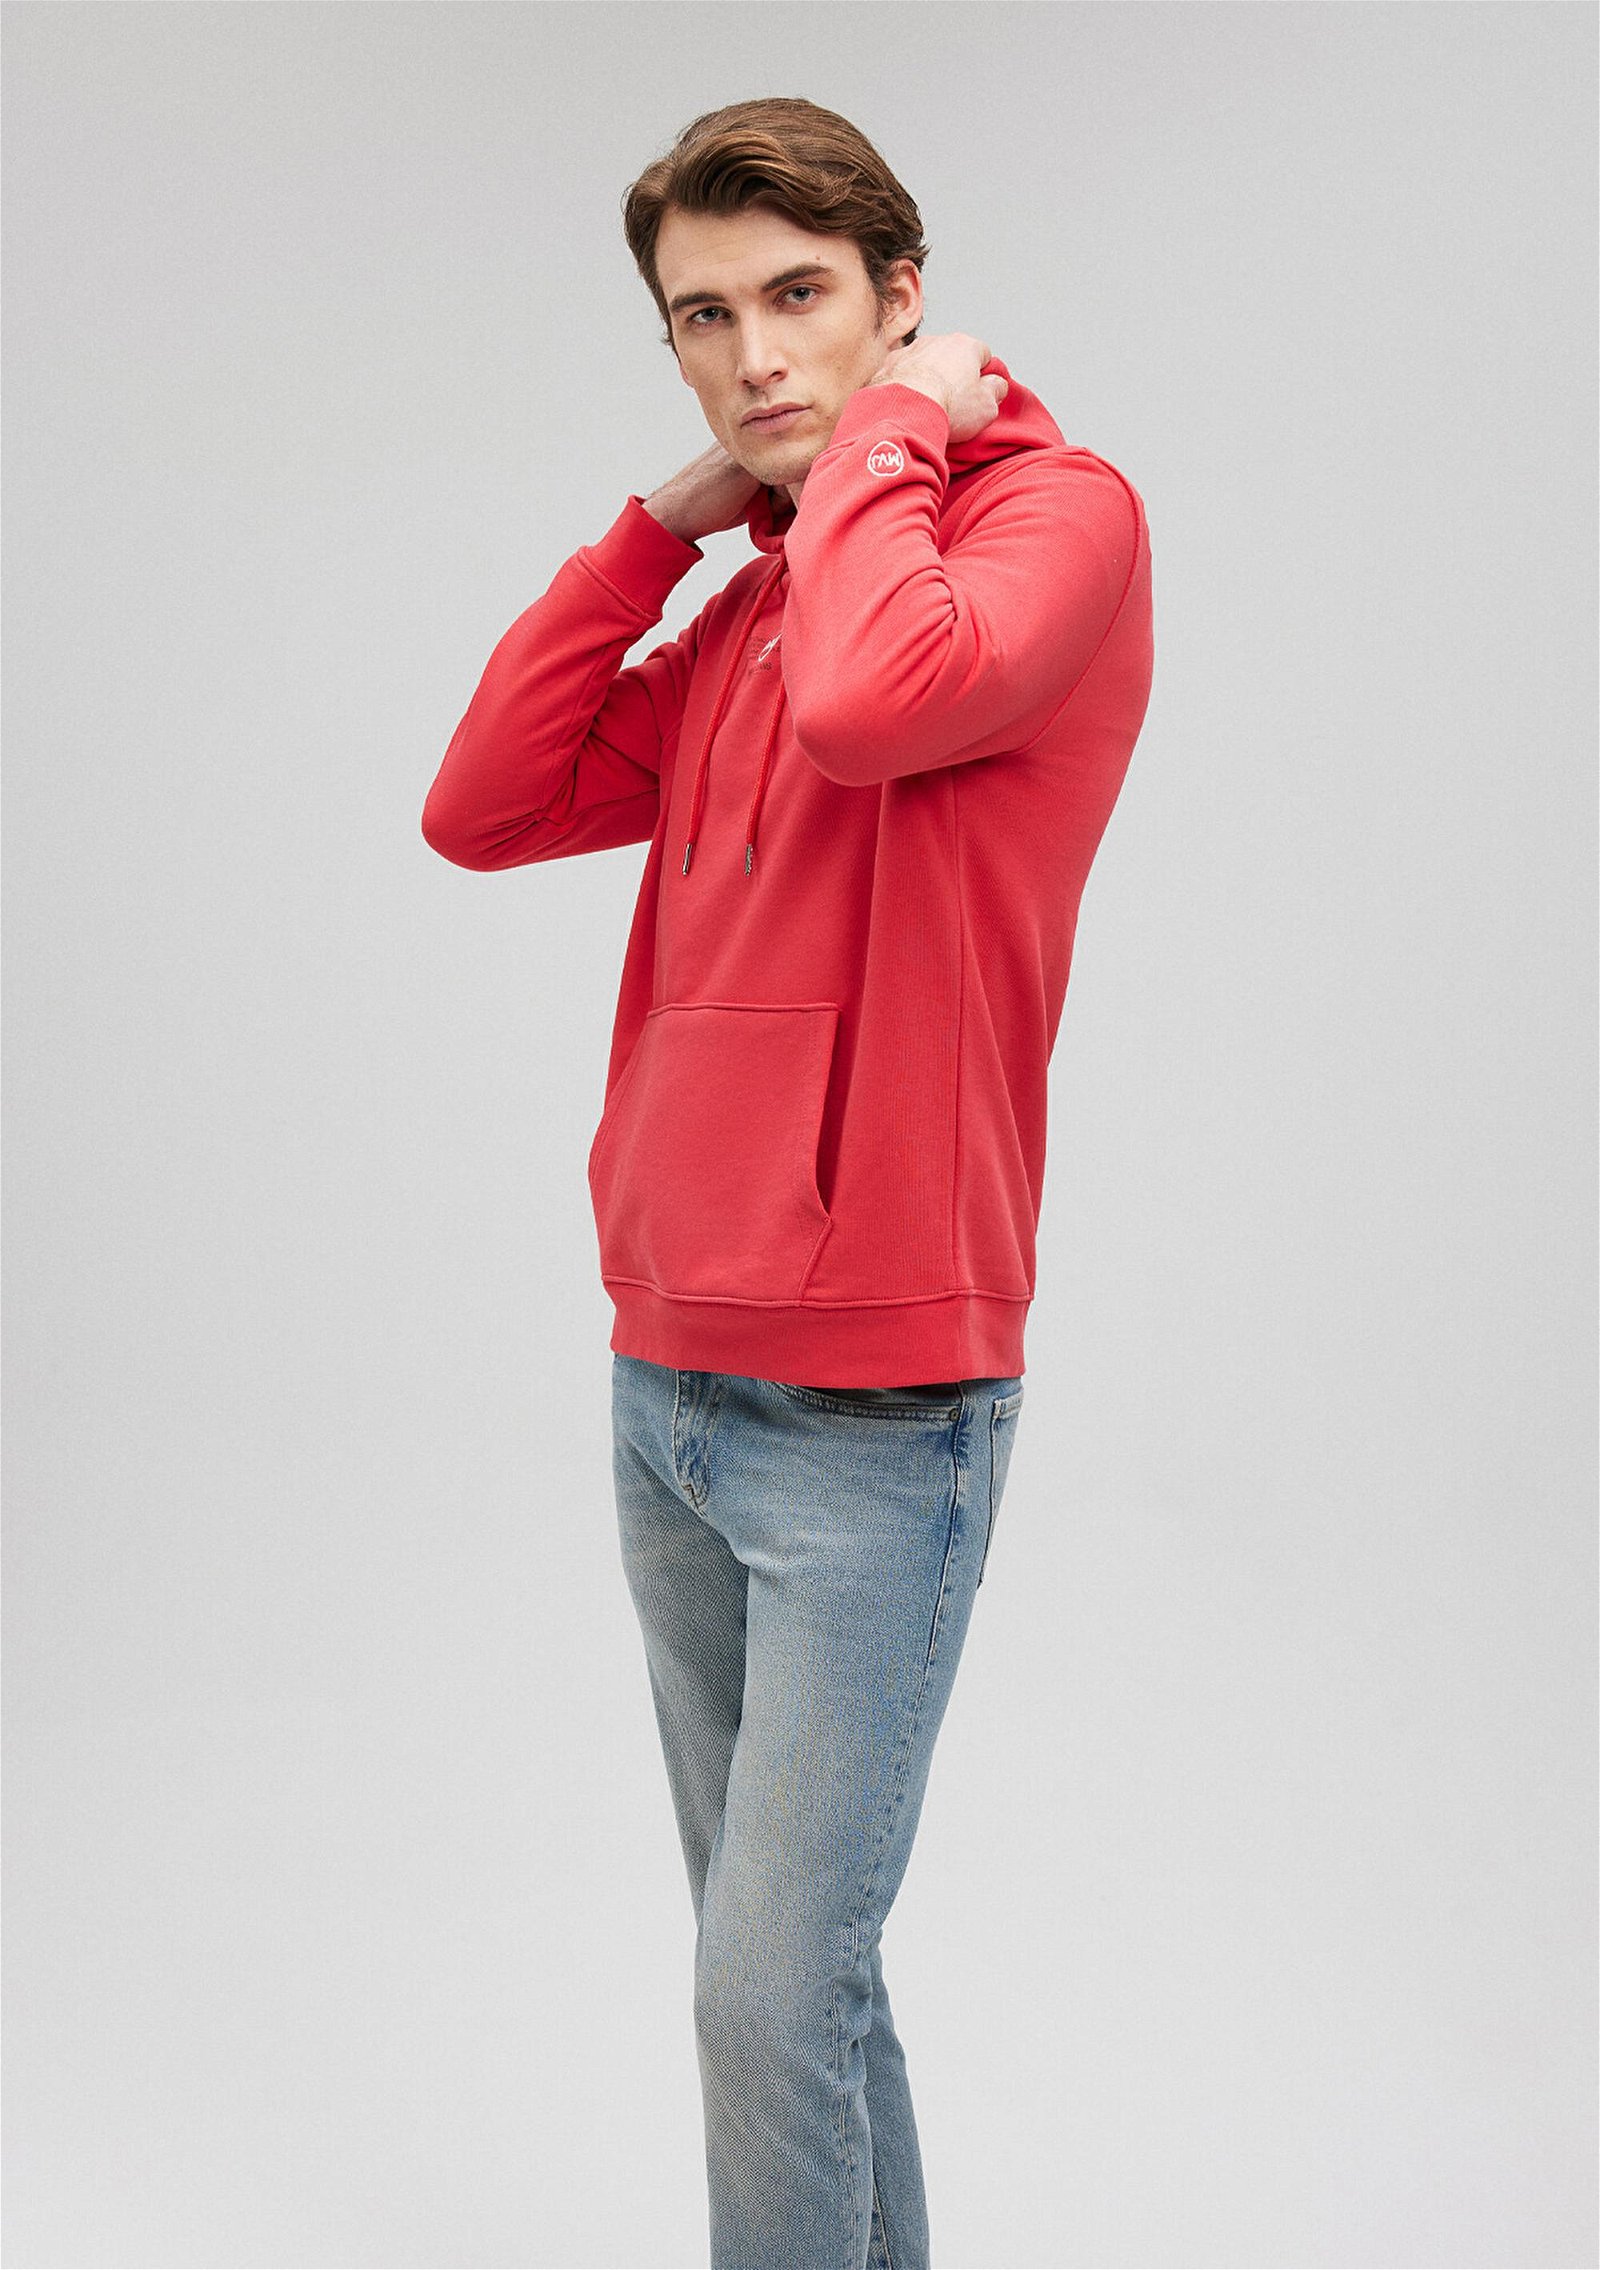 Mavi Kapüşonlu Baskılı Kırmızı Sweatshirt 0S10077-70471